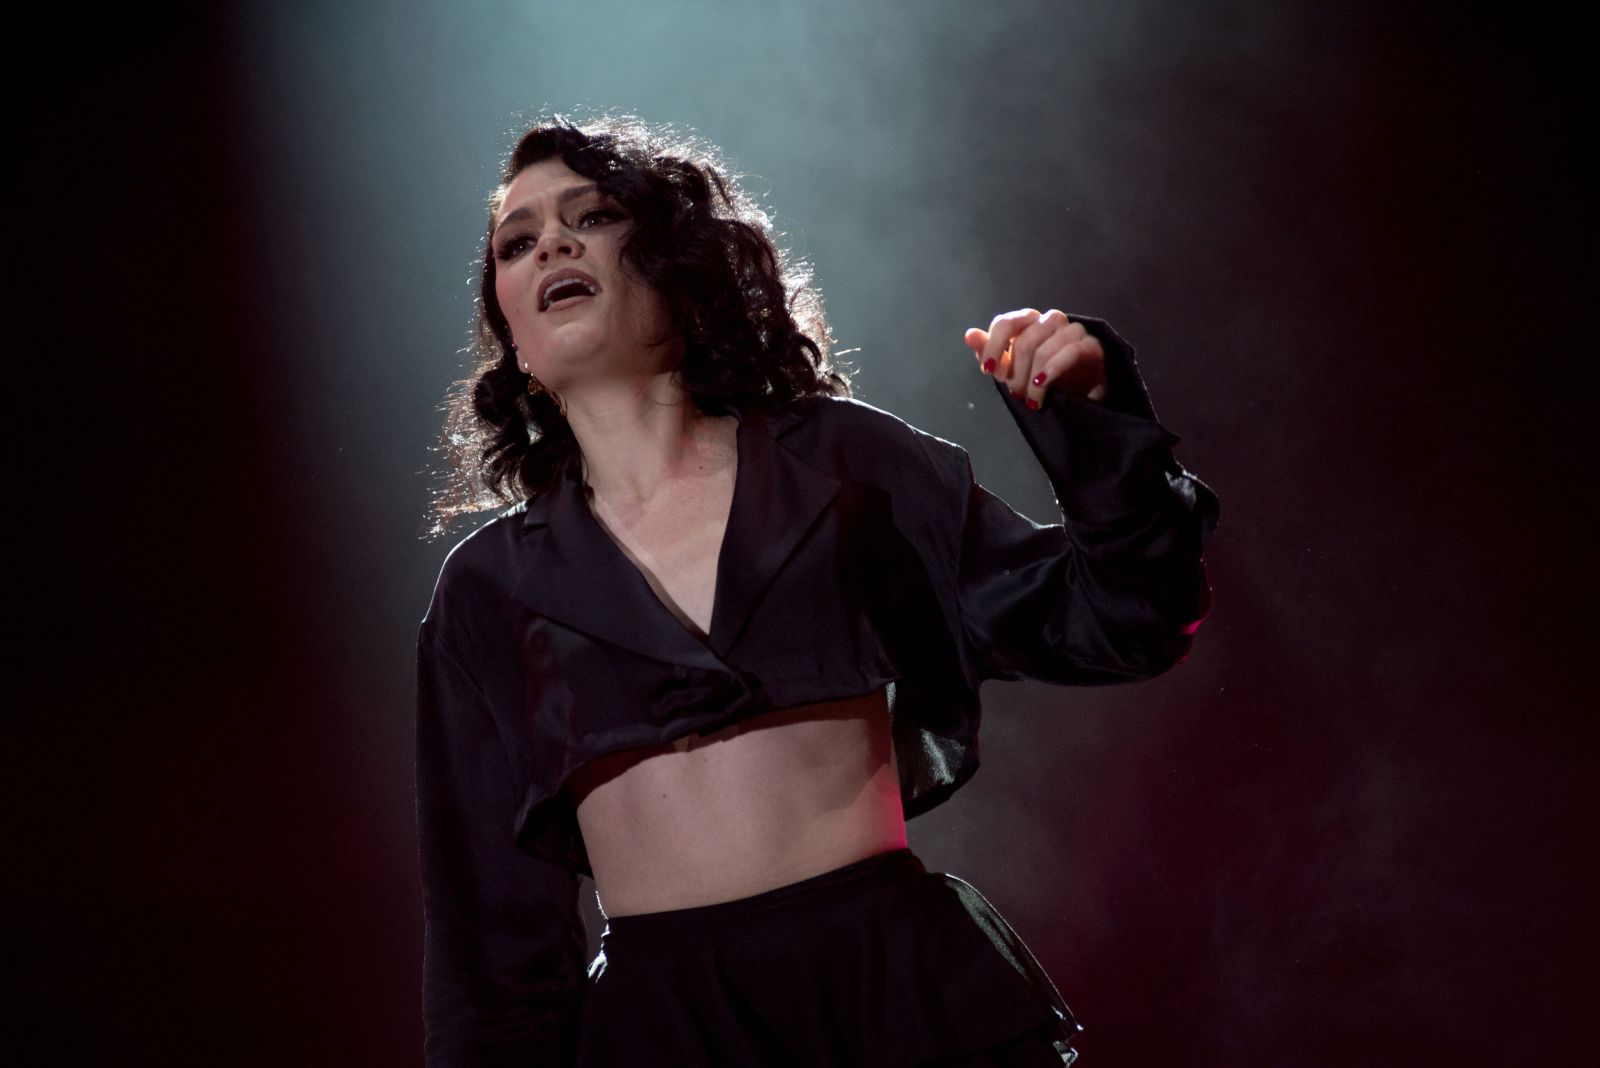 Jessie J cantando no palco com fumaça em sua volta